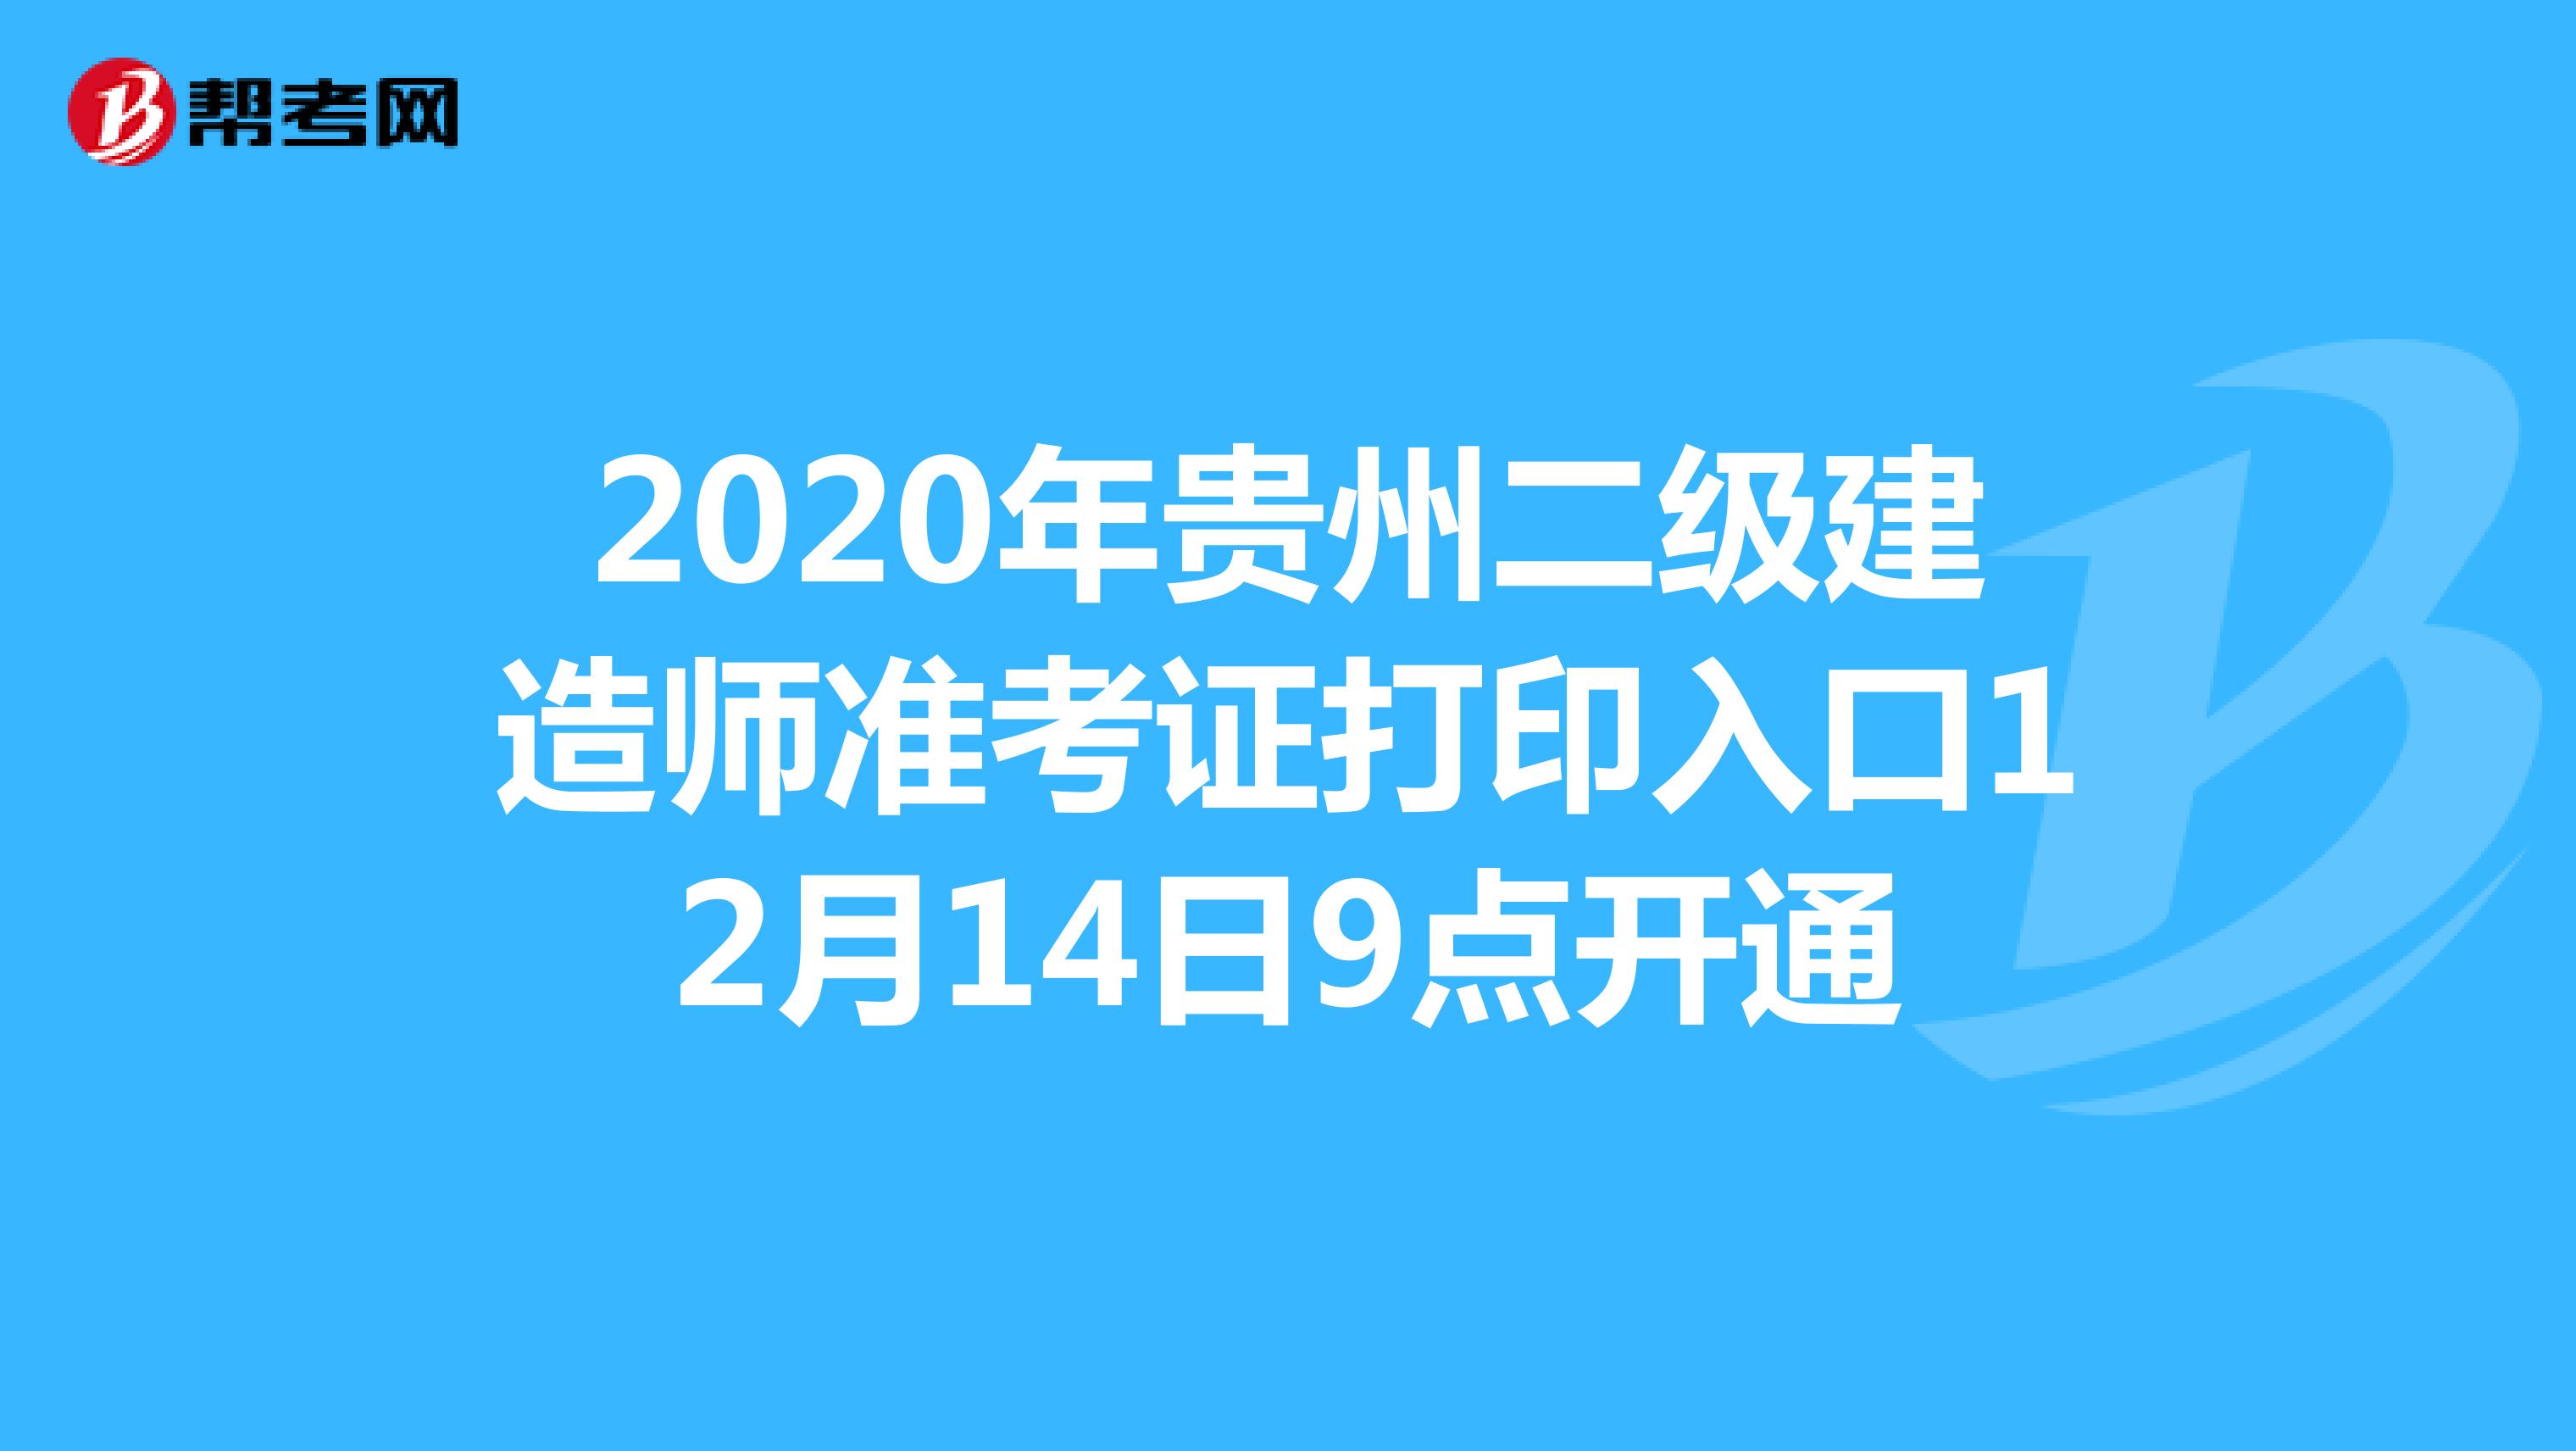 2020年贵州二级建造师准考证打印入口12月14日9点开通